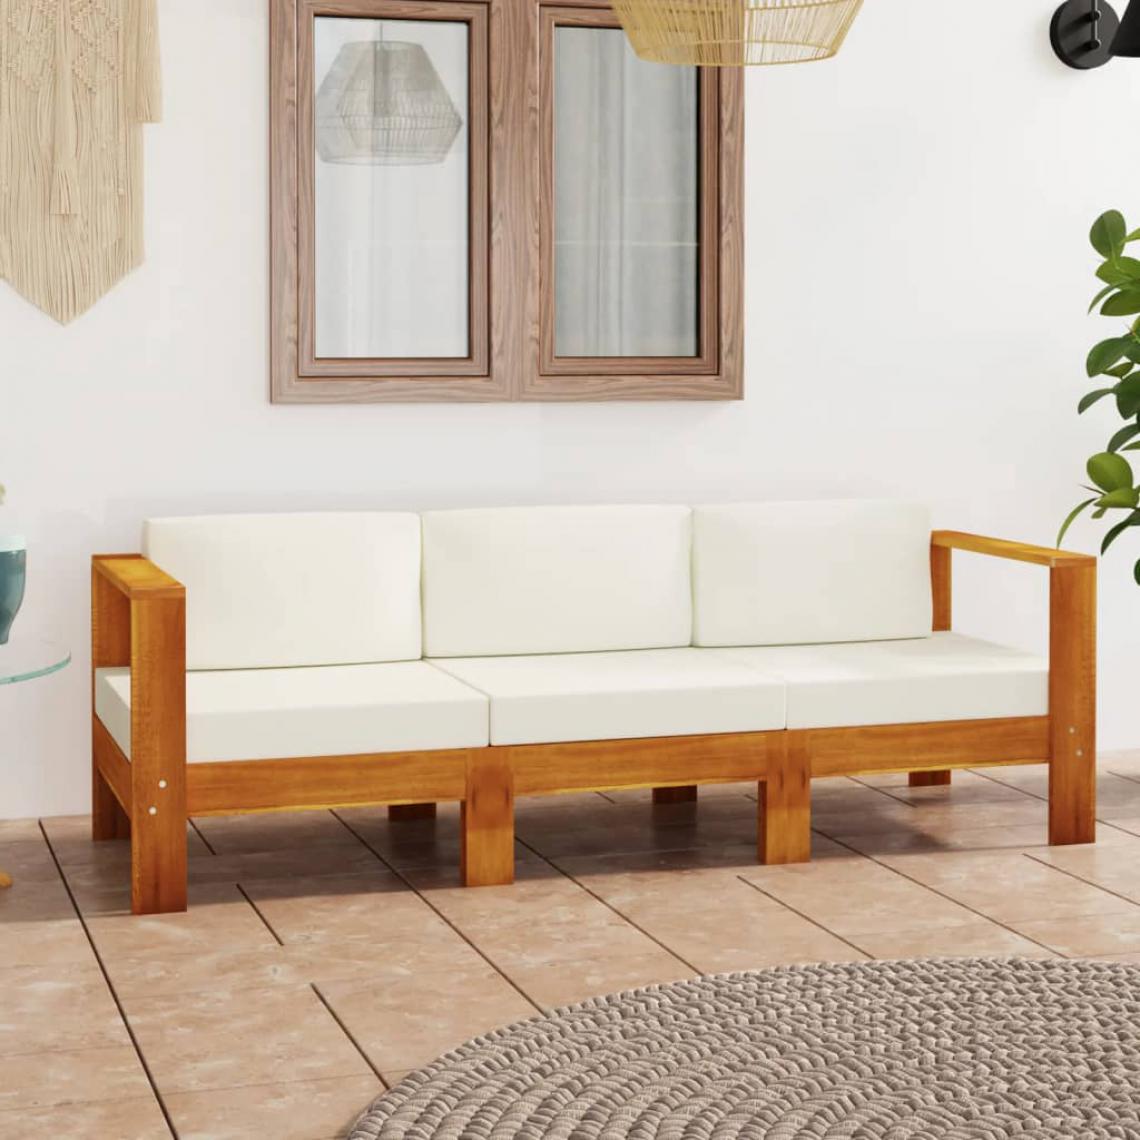 Chunhelife - Canapé de jardin 4 places et coussins blanc crème Bois d'acacia - Ensembles canapés et fauteuils